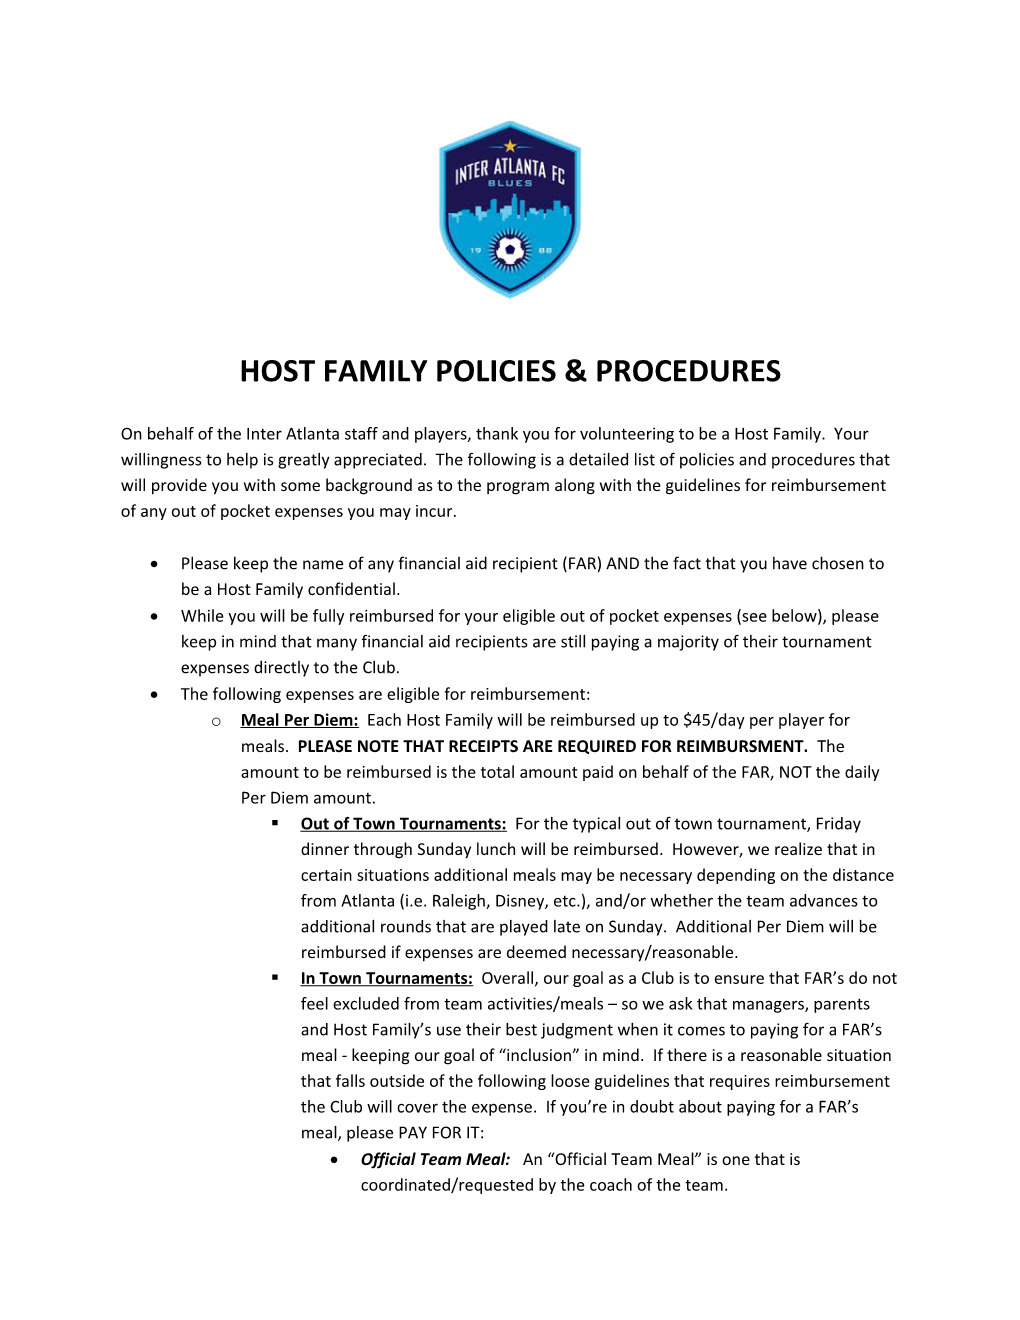 Host Family Policies & Procedures